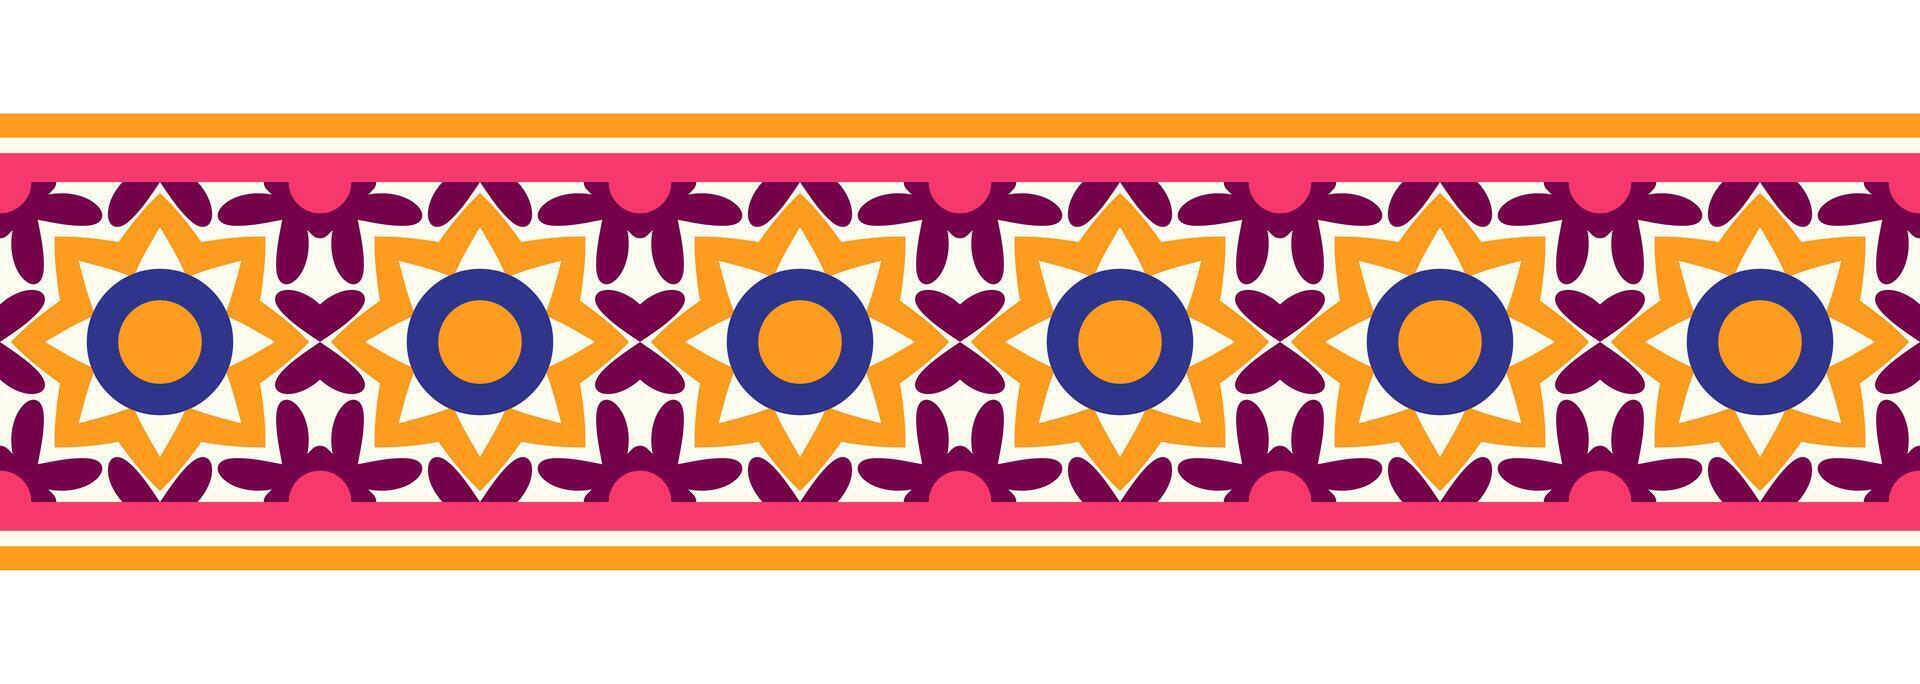 gräns linje sömlös bakgrund. dekorativ design sömlös dekorativ mosaik- gräns mönster. islamisk, indian, arabicum motiv. abstrakt blomma. vektor illustration